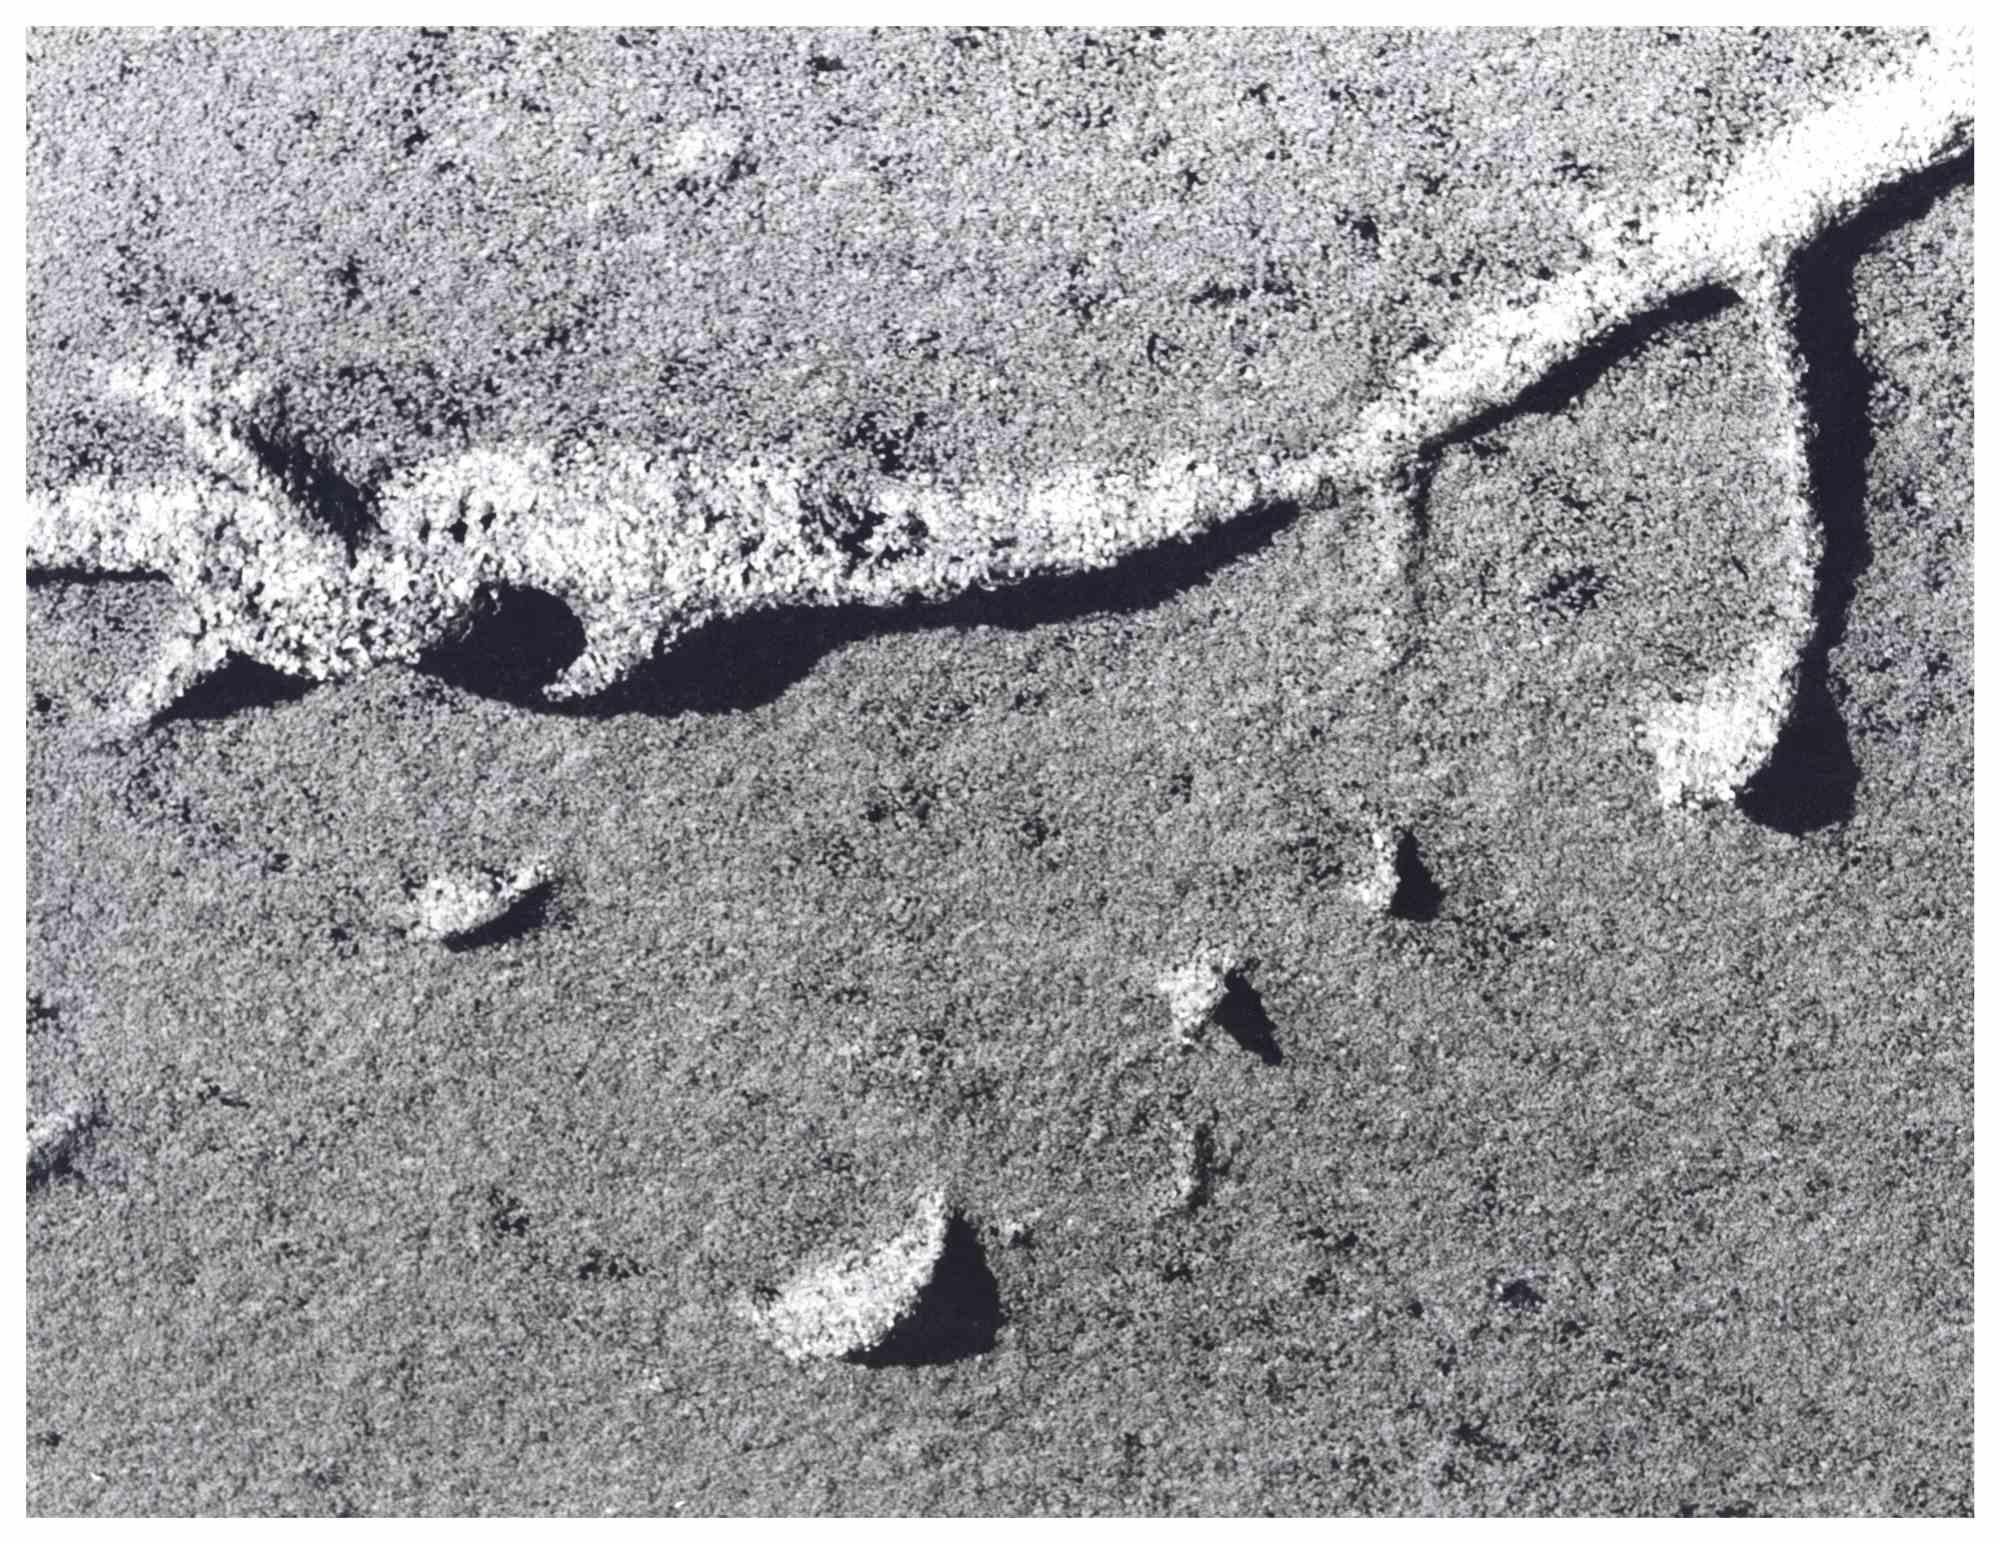 Harold Miller Null Landscape Photograph - Sand Shaped by Miller Null - Original Photograph - 1950s